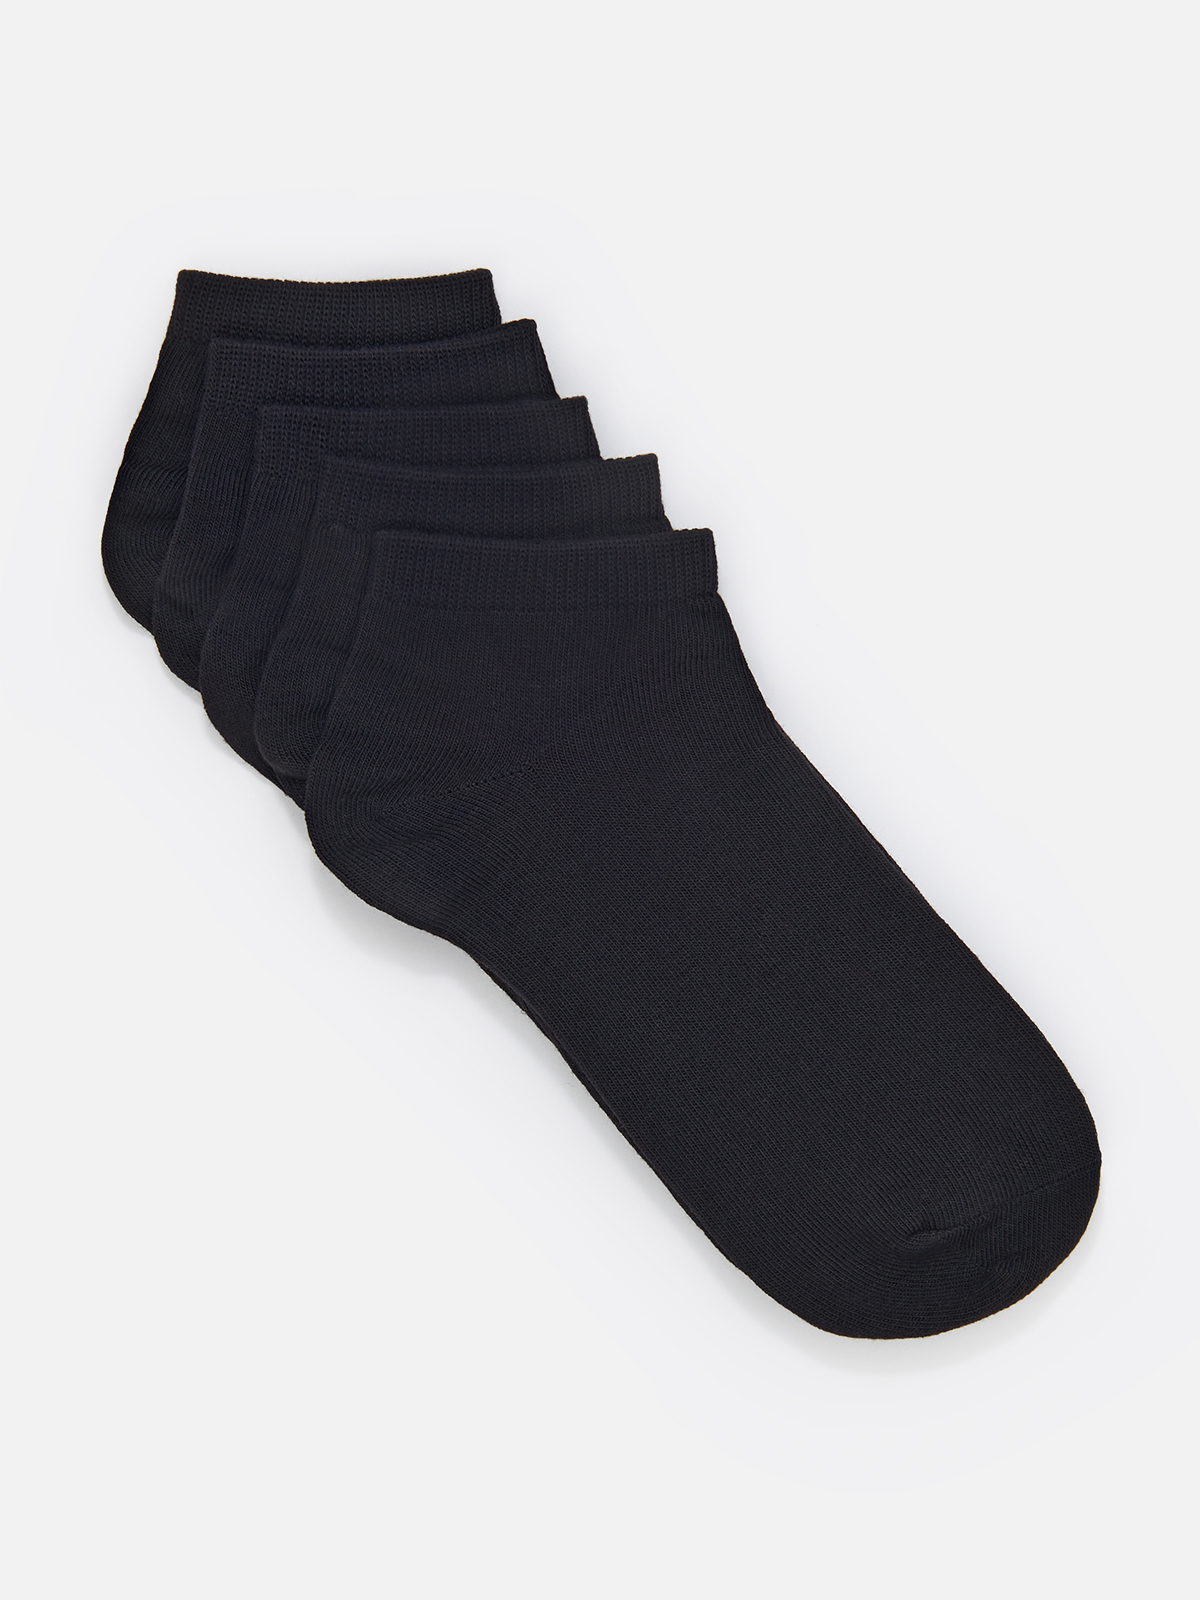 Комплект носков женских Cotton & Quality 5418T5 черных 36-39